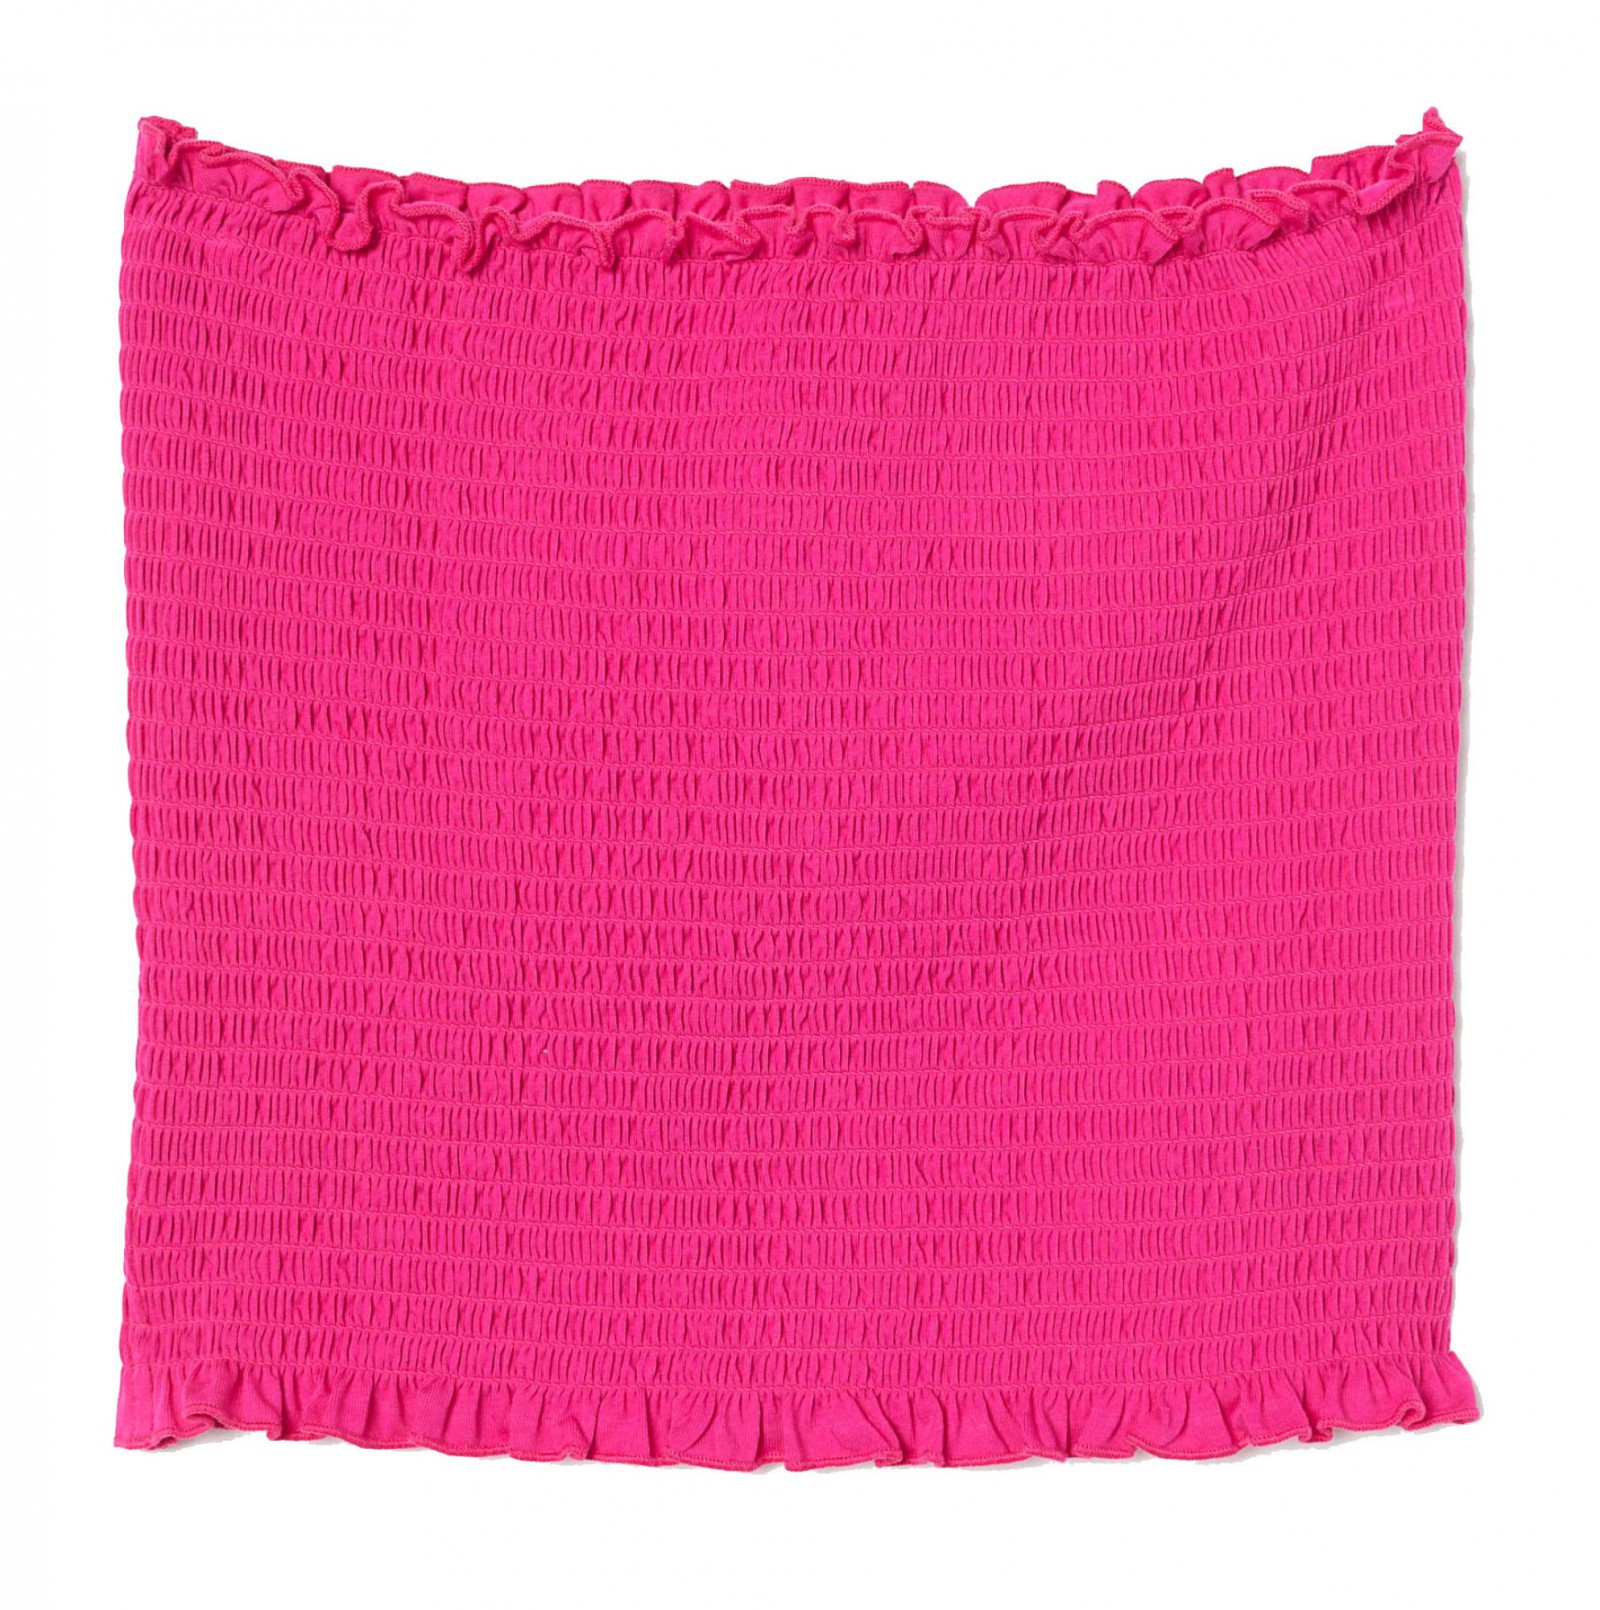 Ladies Neon Pink Shirred Bandeau Top Small UK 8-10 - Imagen 1 de 1